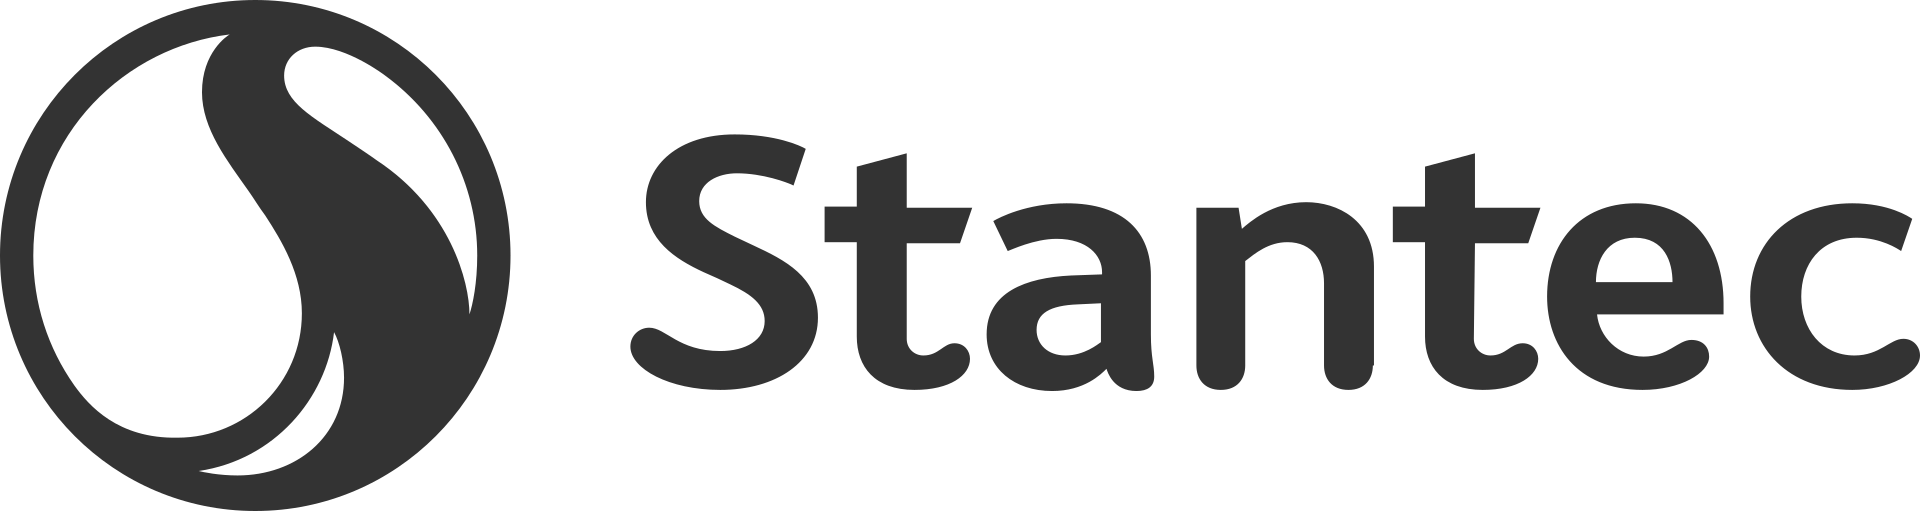 Stantec Brand Logo